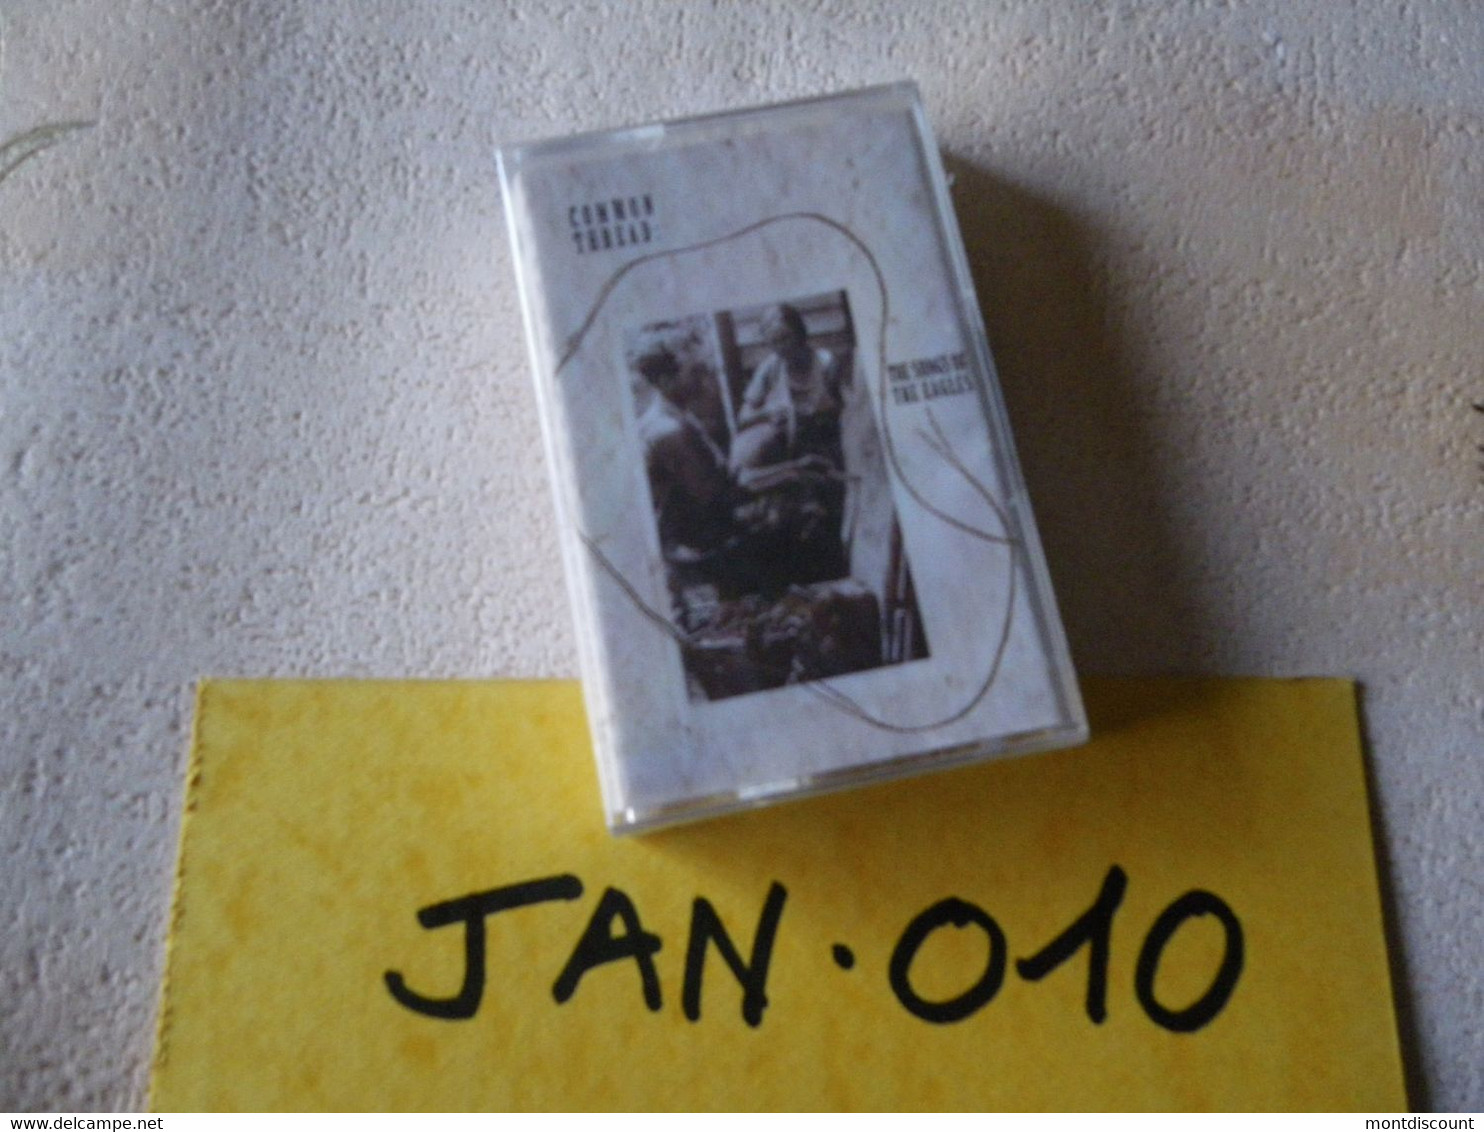 COMMON THREAD THE SONG OF THE EAGLES K7 AUDIO EMBALLE D'ORIGINE JAMAIS SERVIE... VOIR PHOTO... (JAN 010) - Cassettes Audio